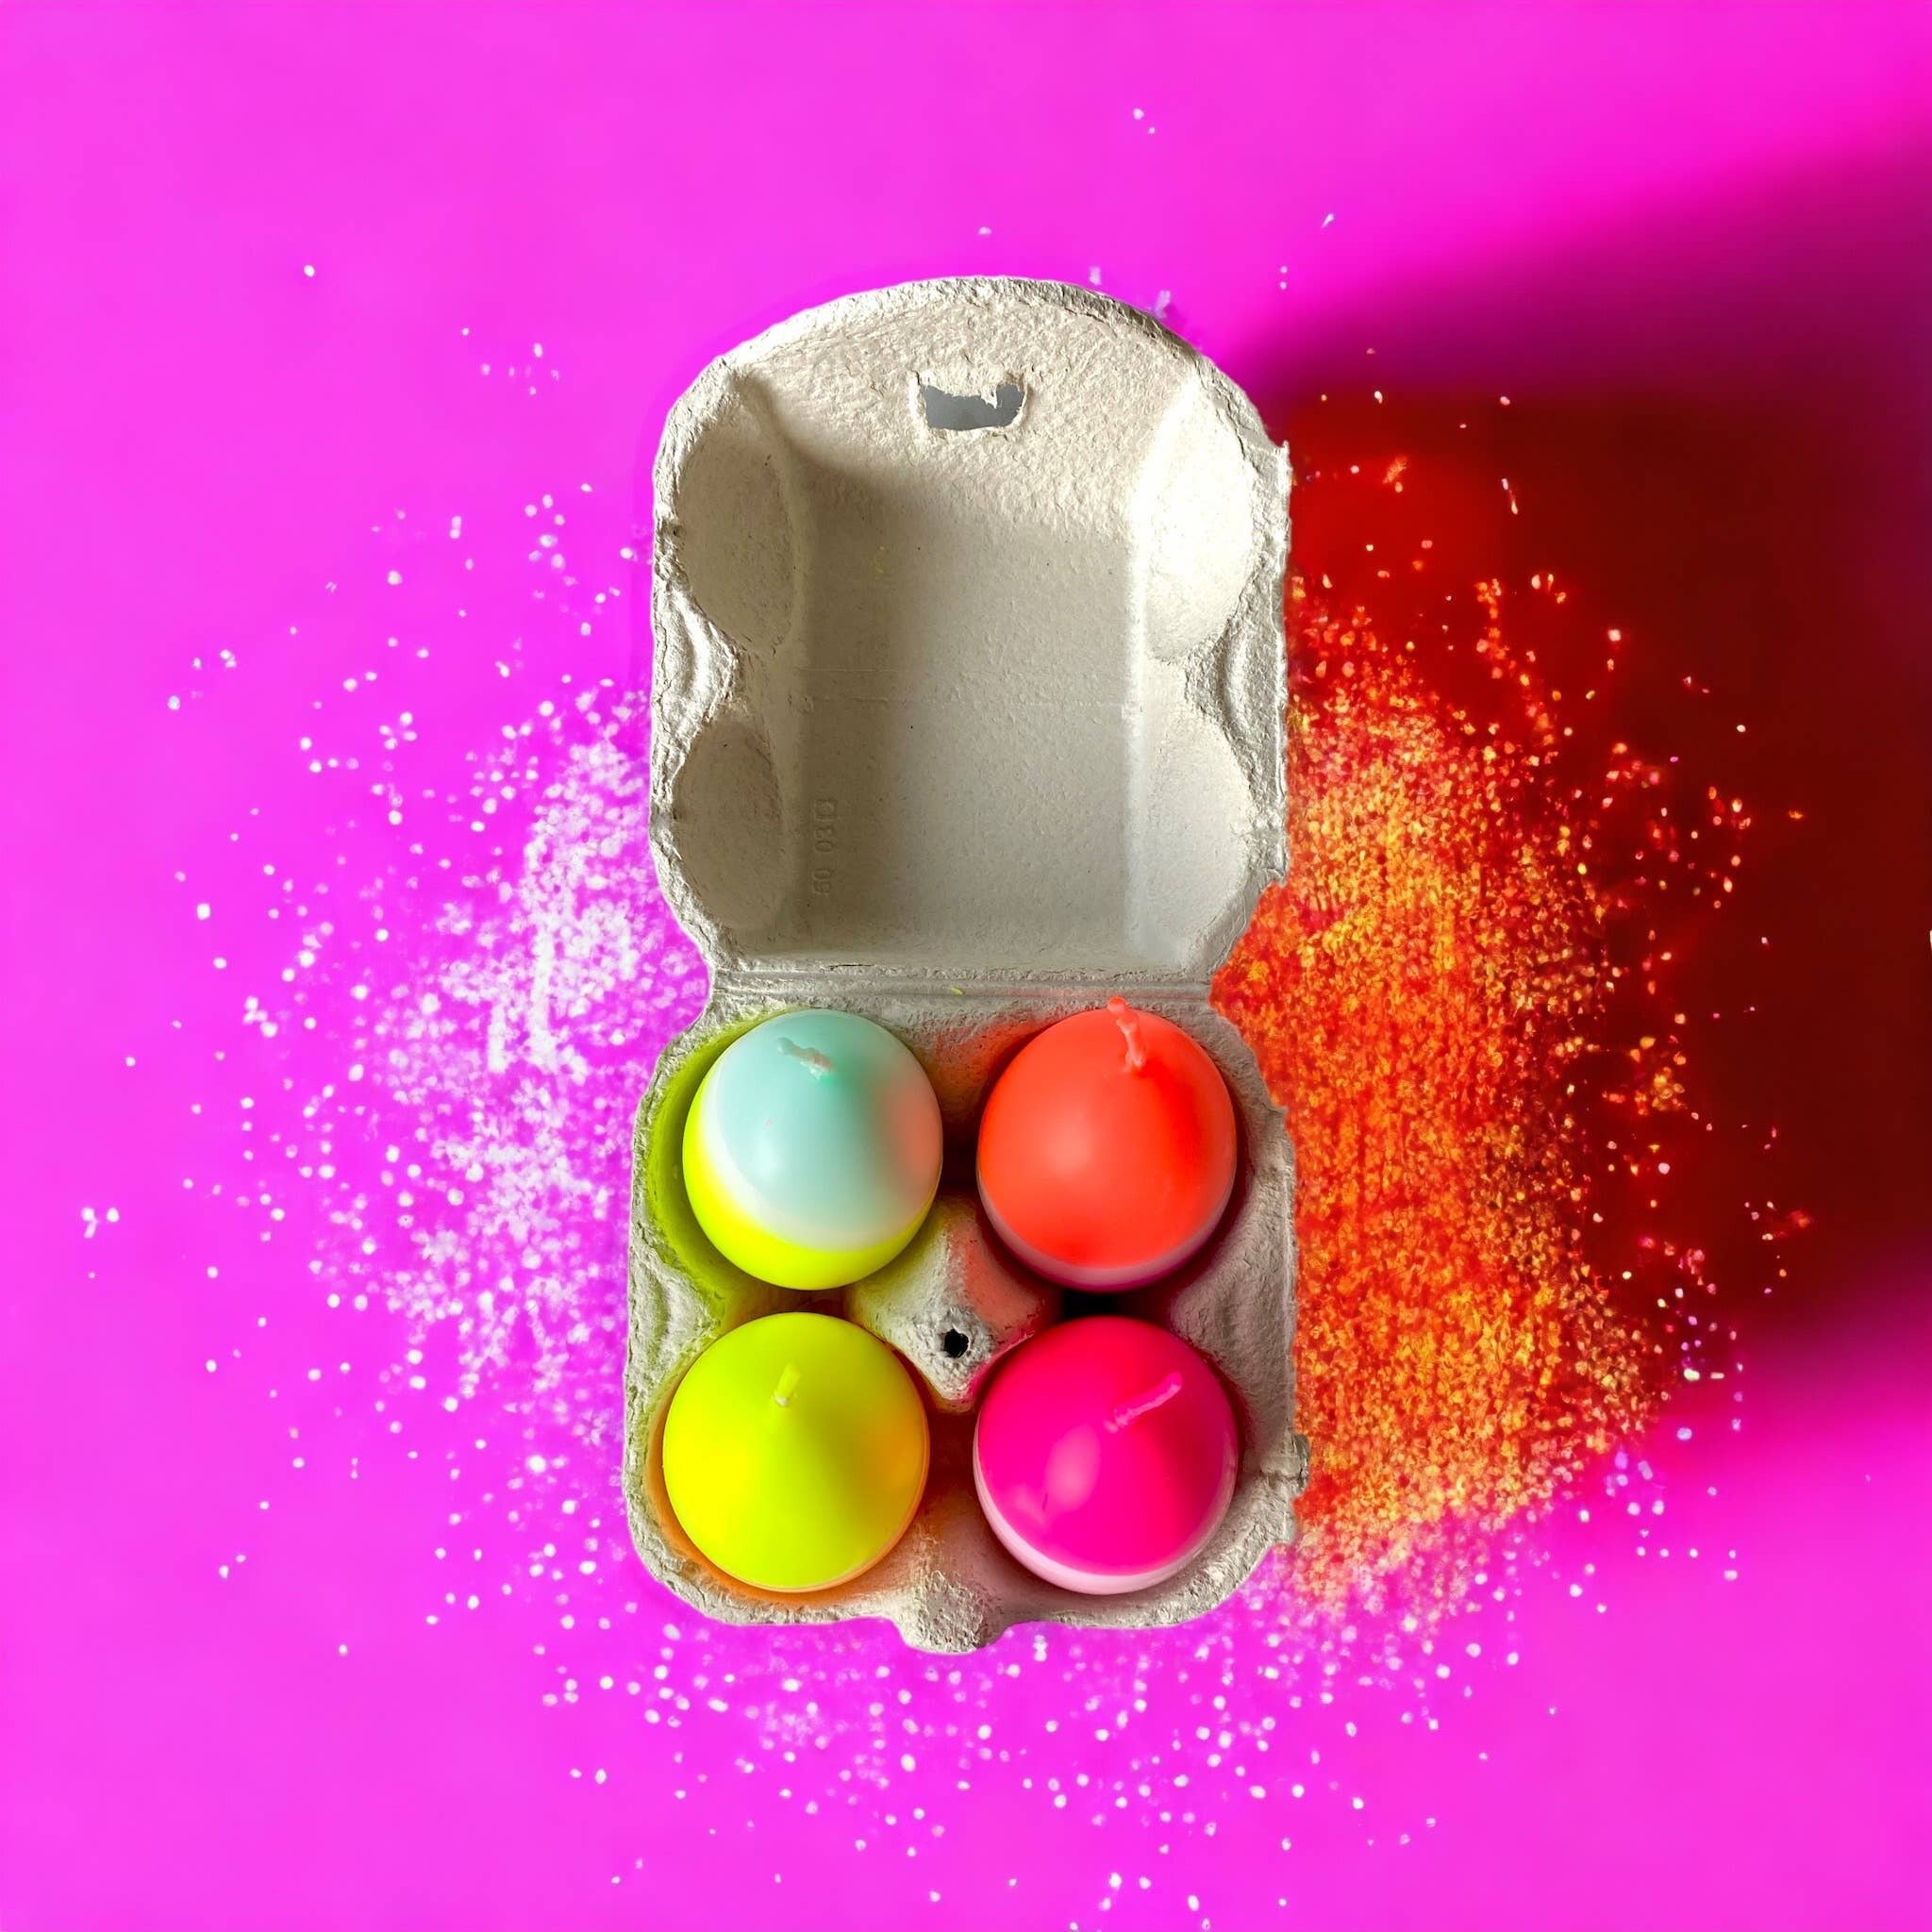 Dip Dye Eggs Candles | Set of 4 in Egg Carton | Neon